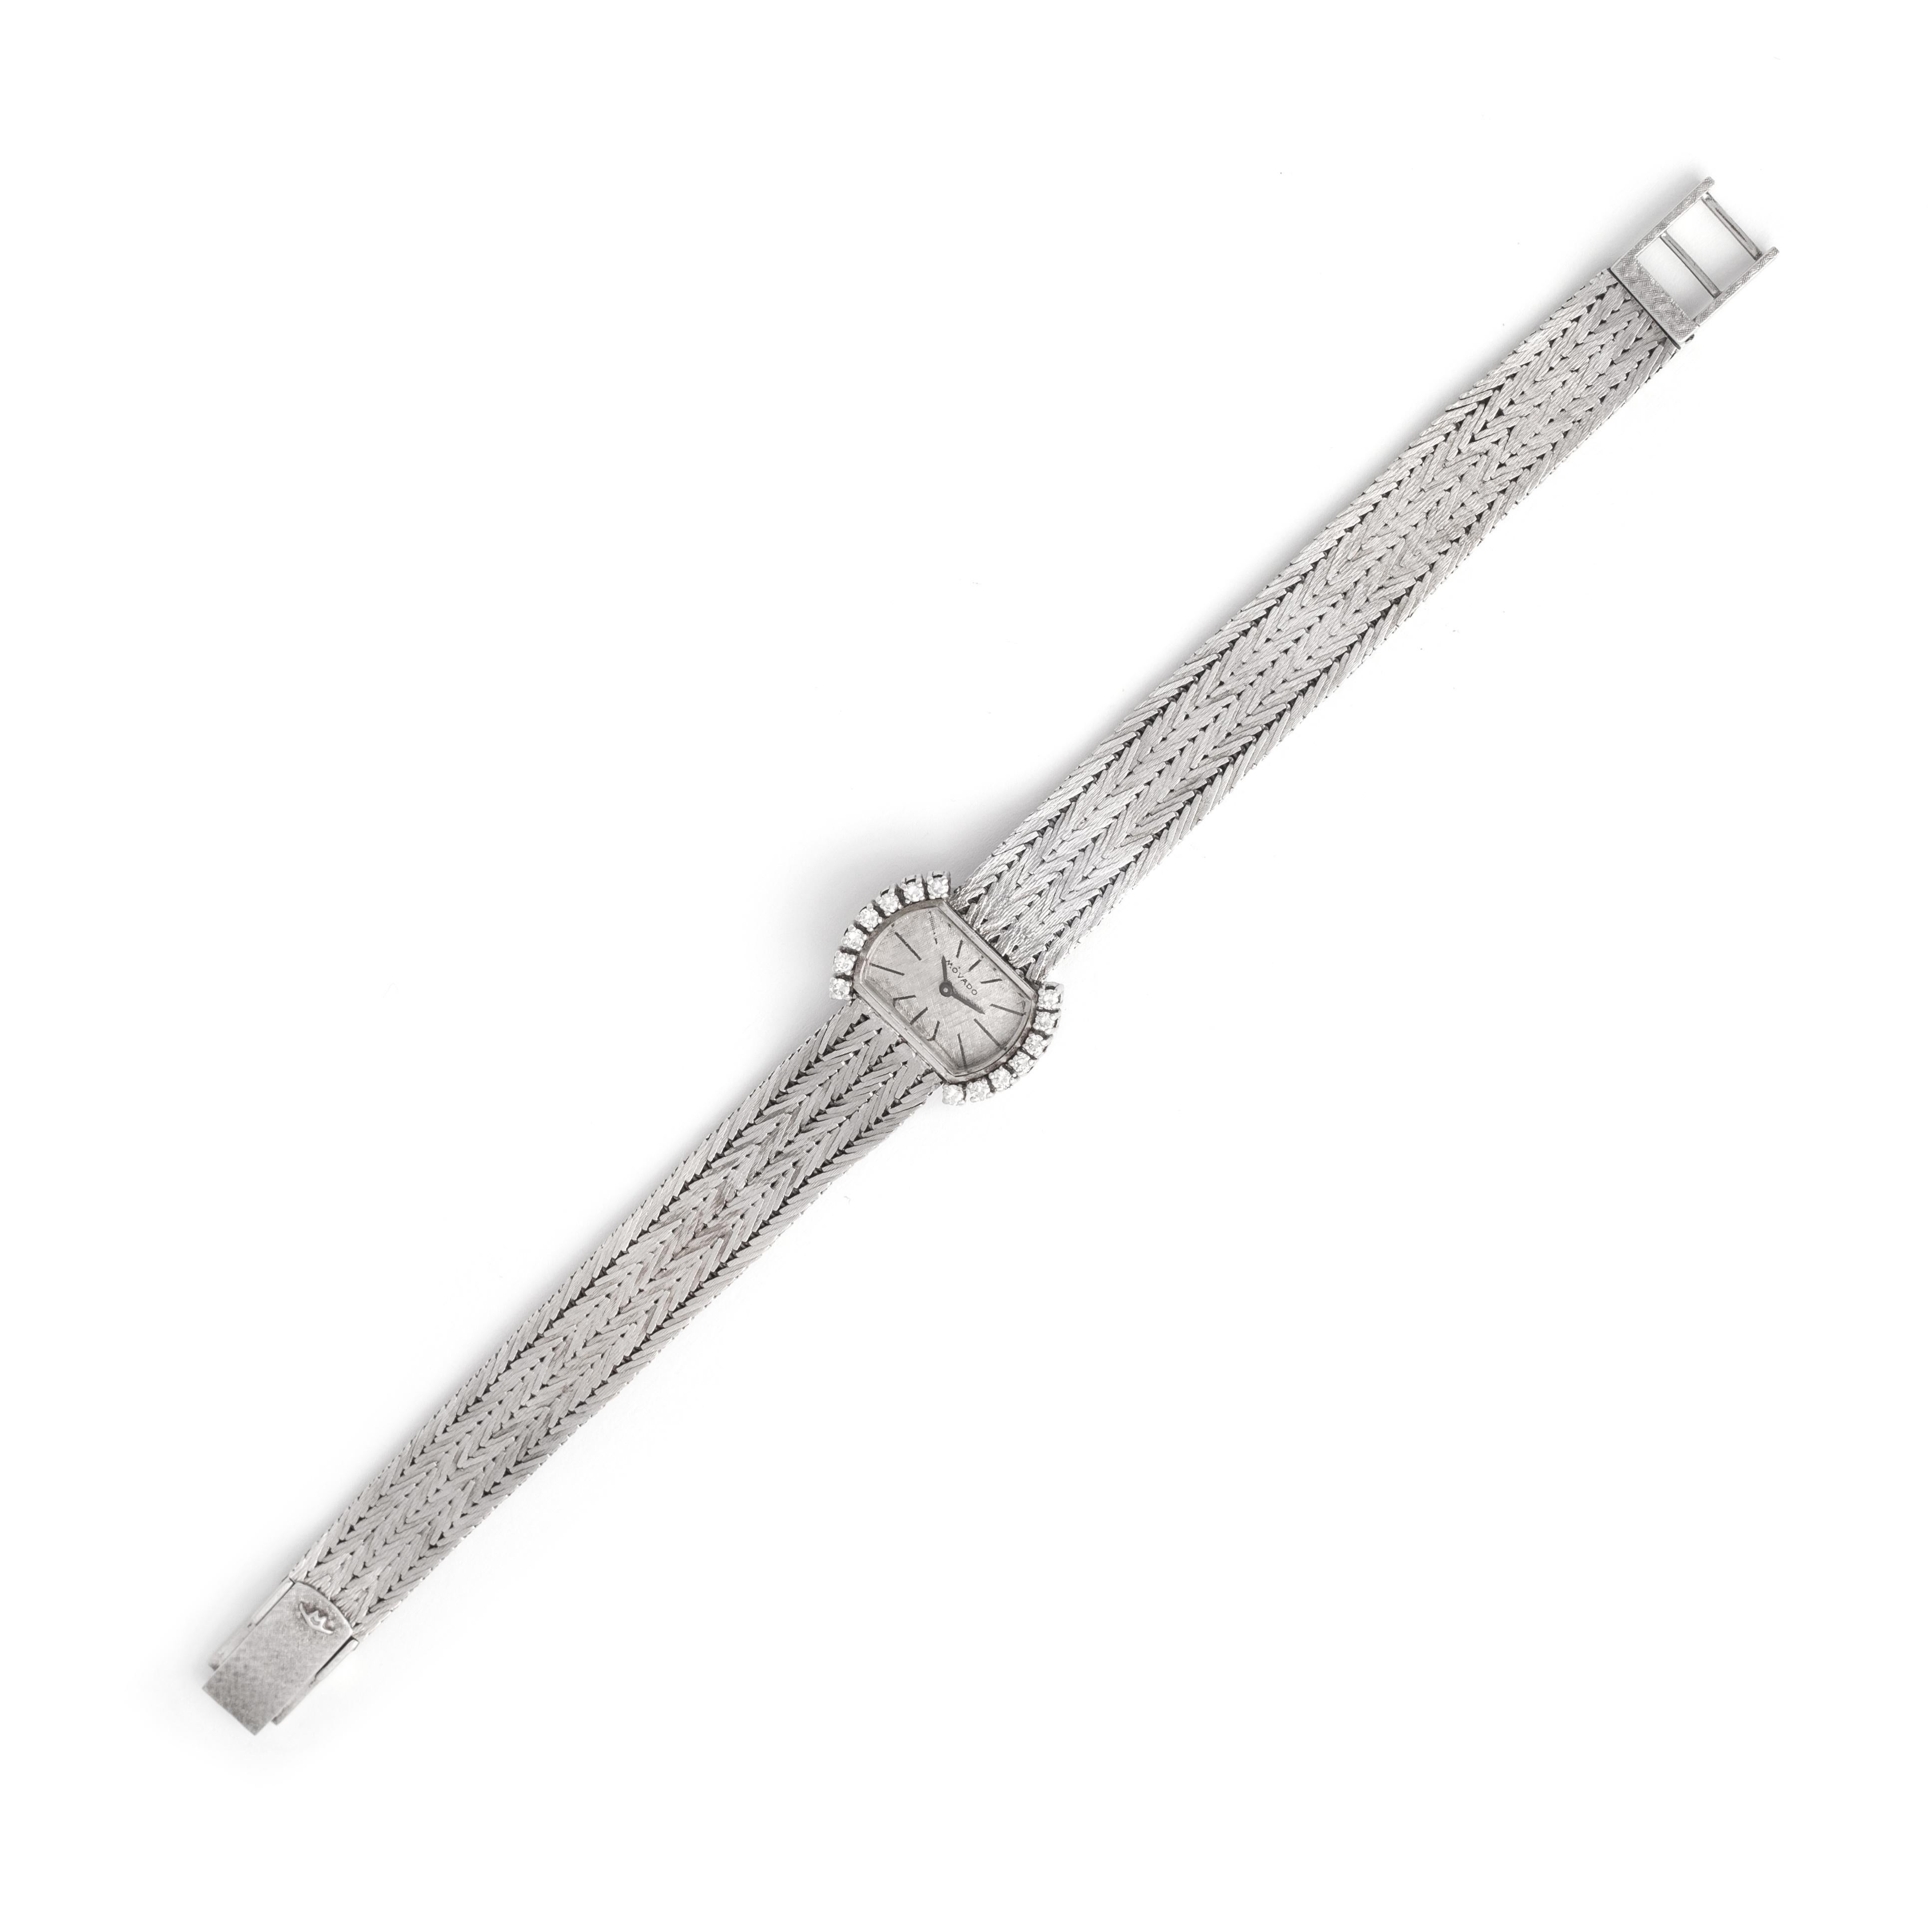 Movado Diamant-Weißgold-Armbanduhr.
Circa 1970.
Länge des Handgelenks: ca. 18.00 Zentimeter.
Abmessungen des Gehäuses: 1,70 x 0,90 Zentimeter.
Gewicht: 31,88 Gramm.

Wir können nicht garantieren, dass das Uhrwerk funktioniert.